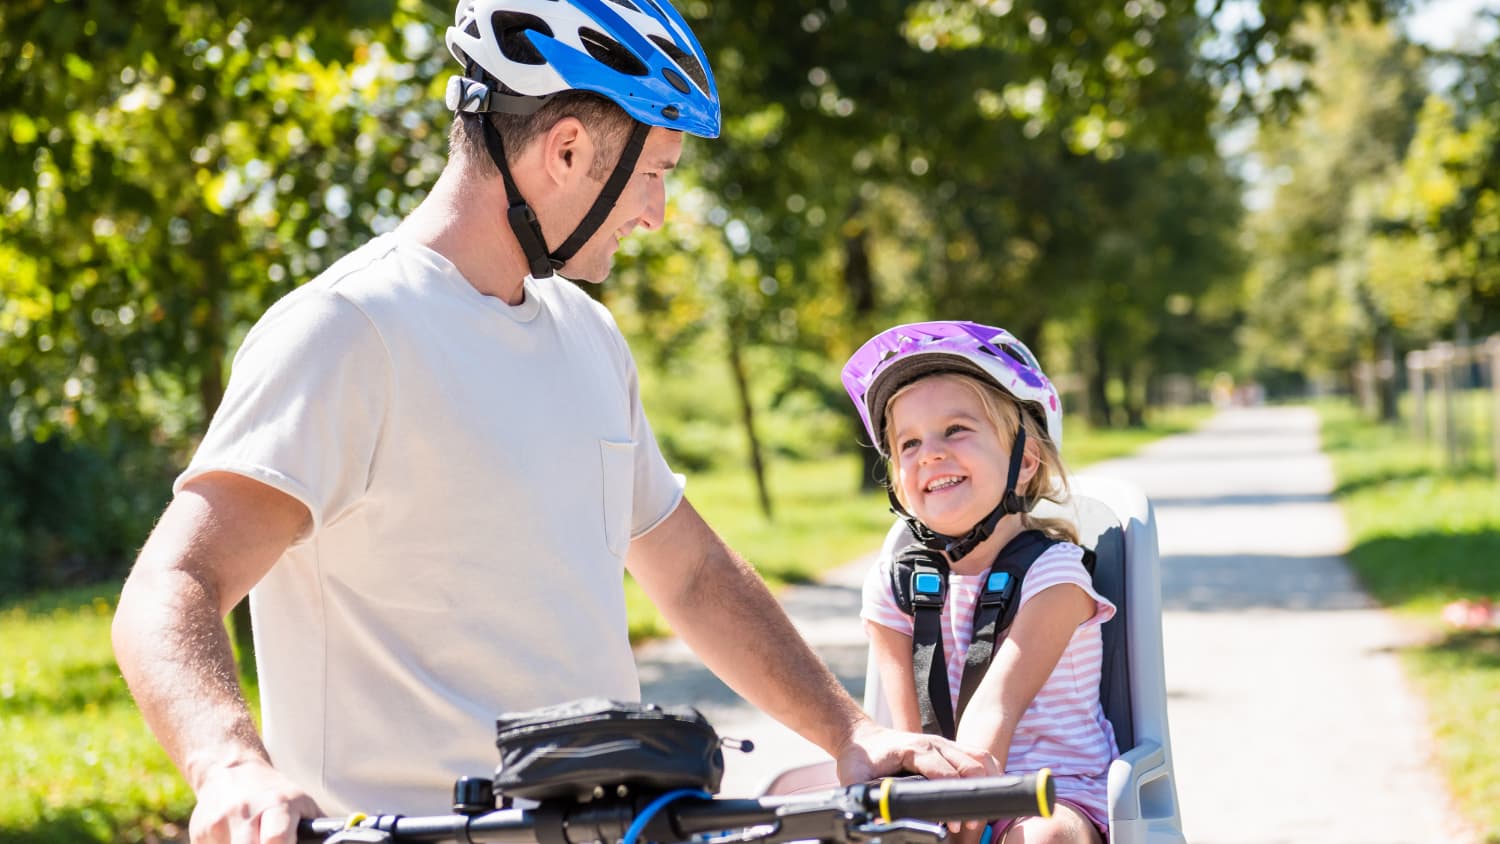 Fahrradanhänger oder Fahrradkindersitz: Was ist sicherer?